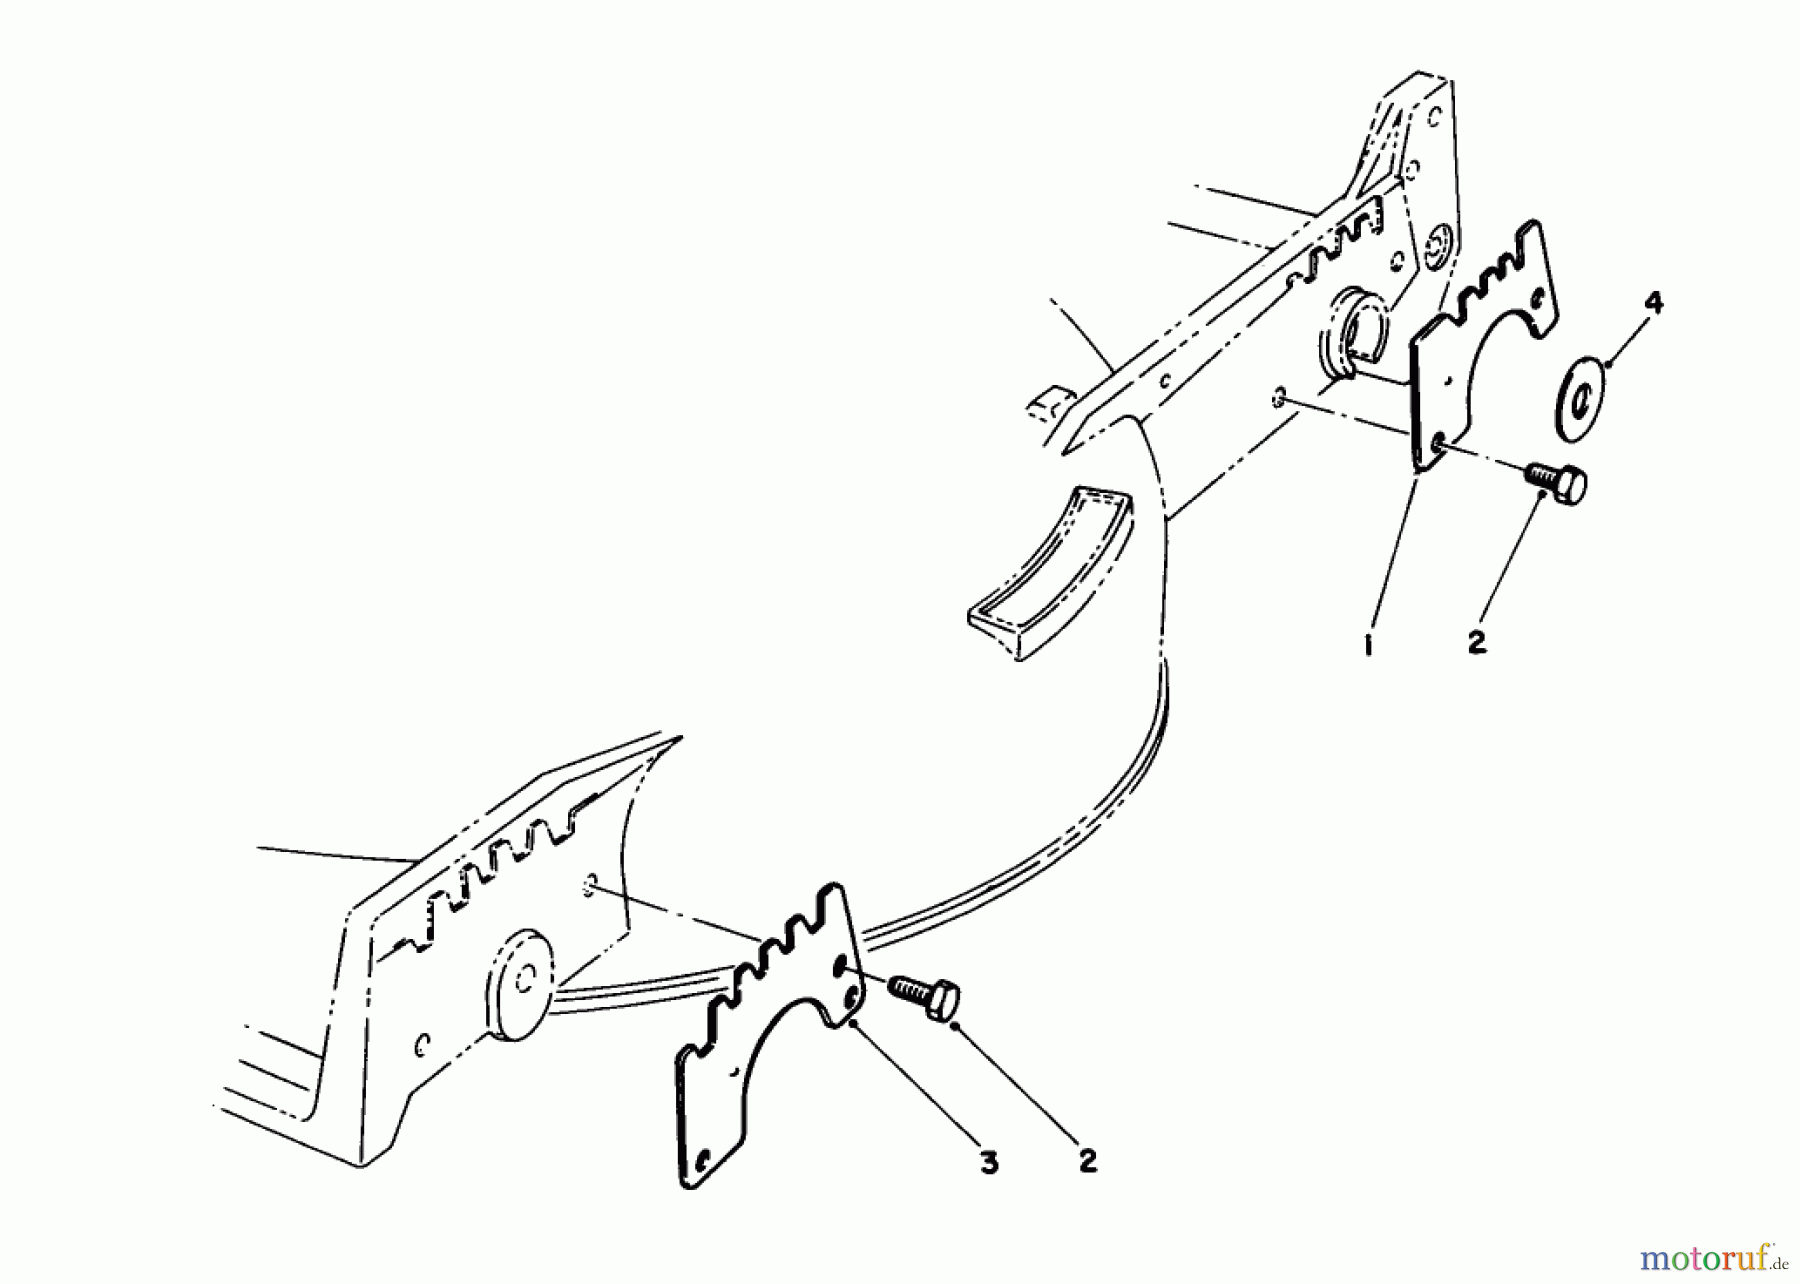  Toro Neu Mowers, Walk-Behind Seite 1 20217 - Toro Lawnmower, 1992 (2000001-2999999) WEAR PLATE MODEL NO. 49-4080 (OPTIONAL)